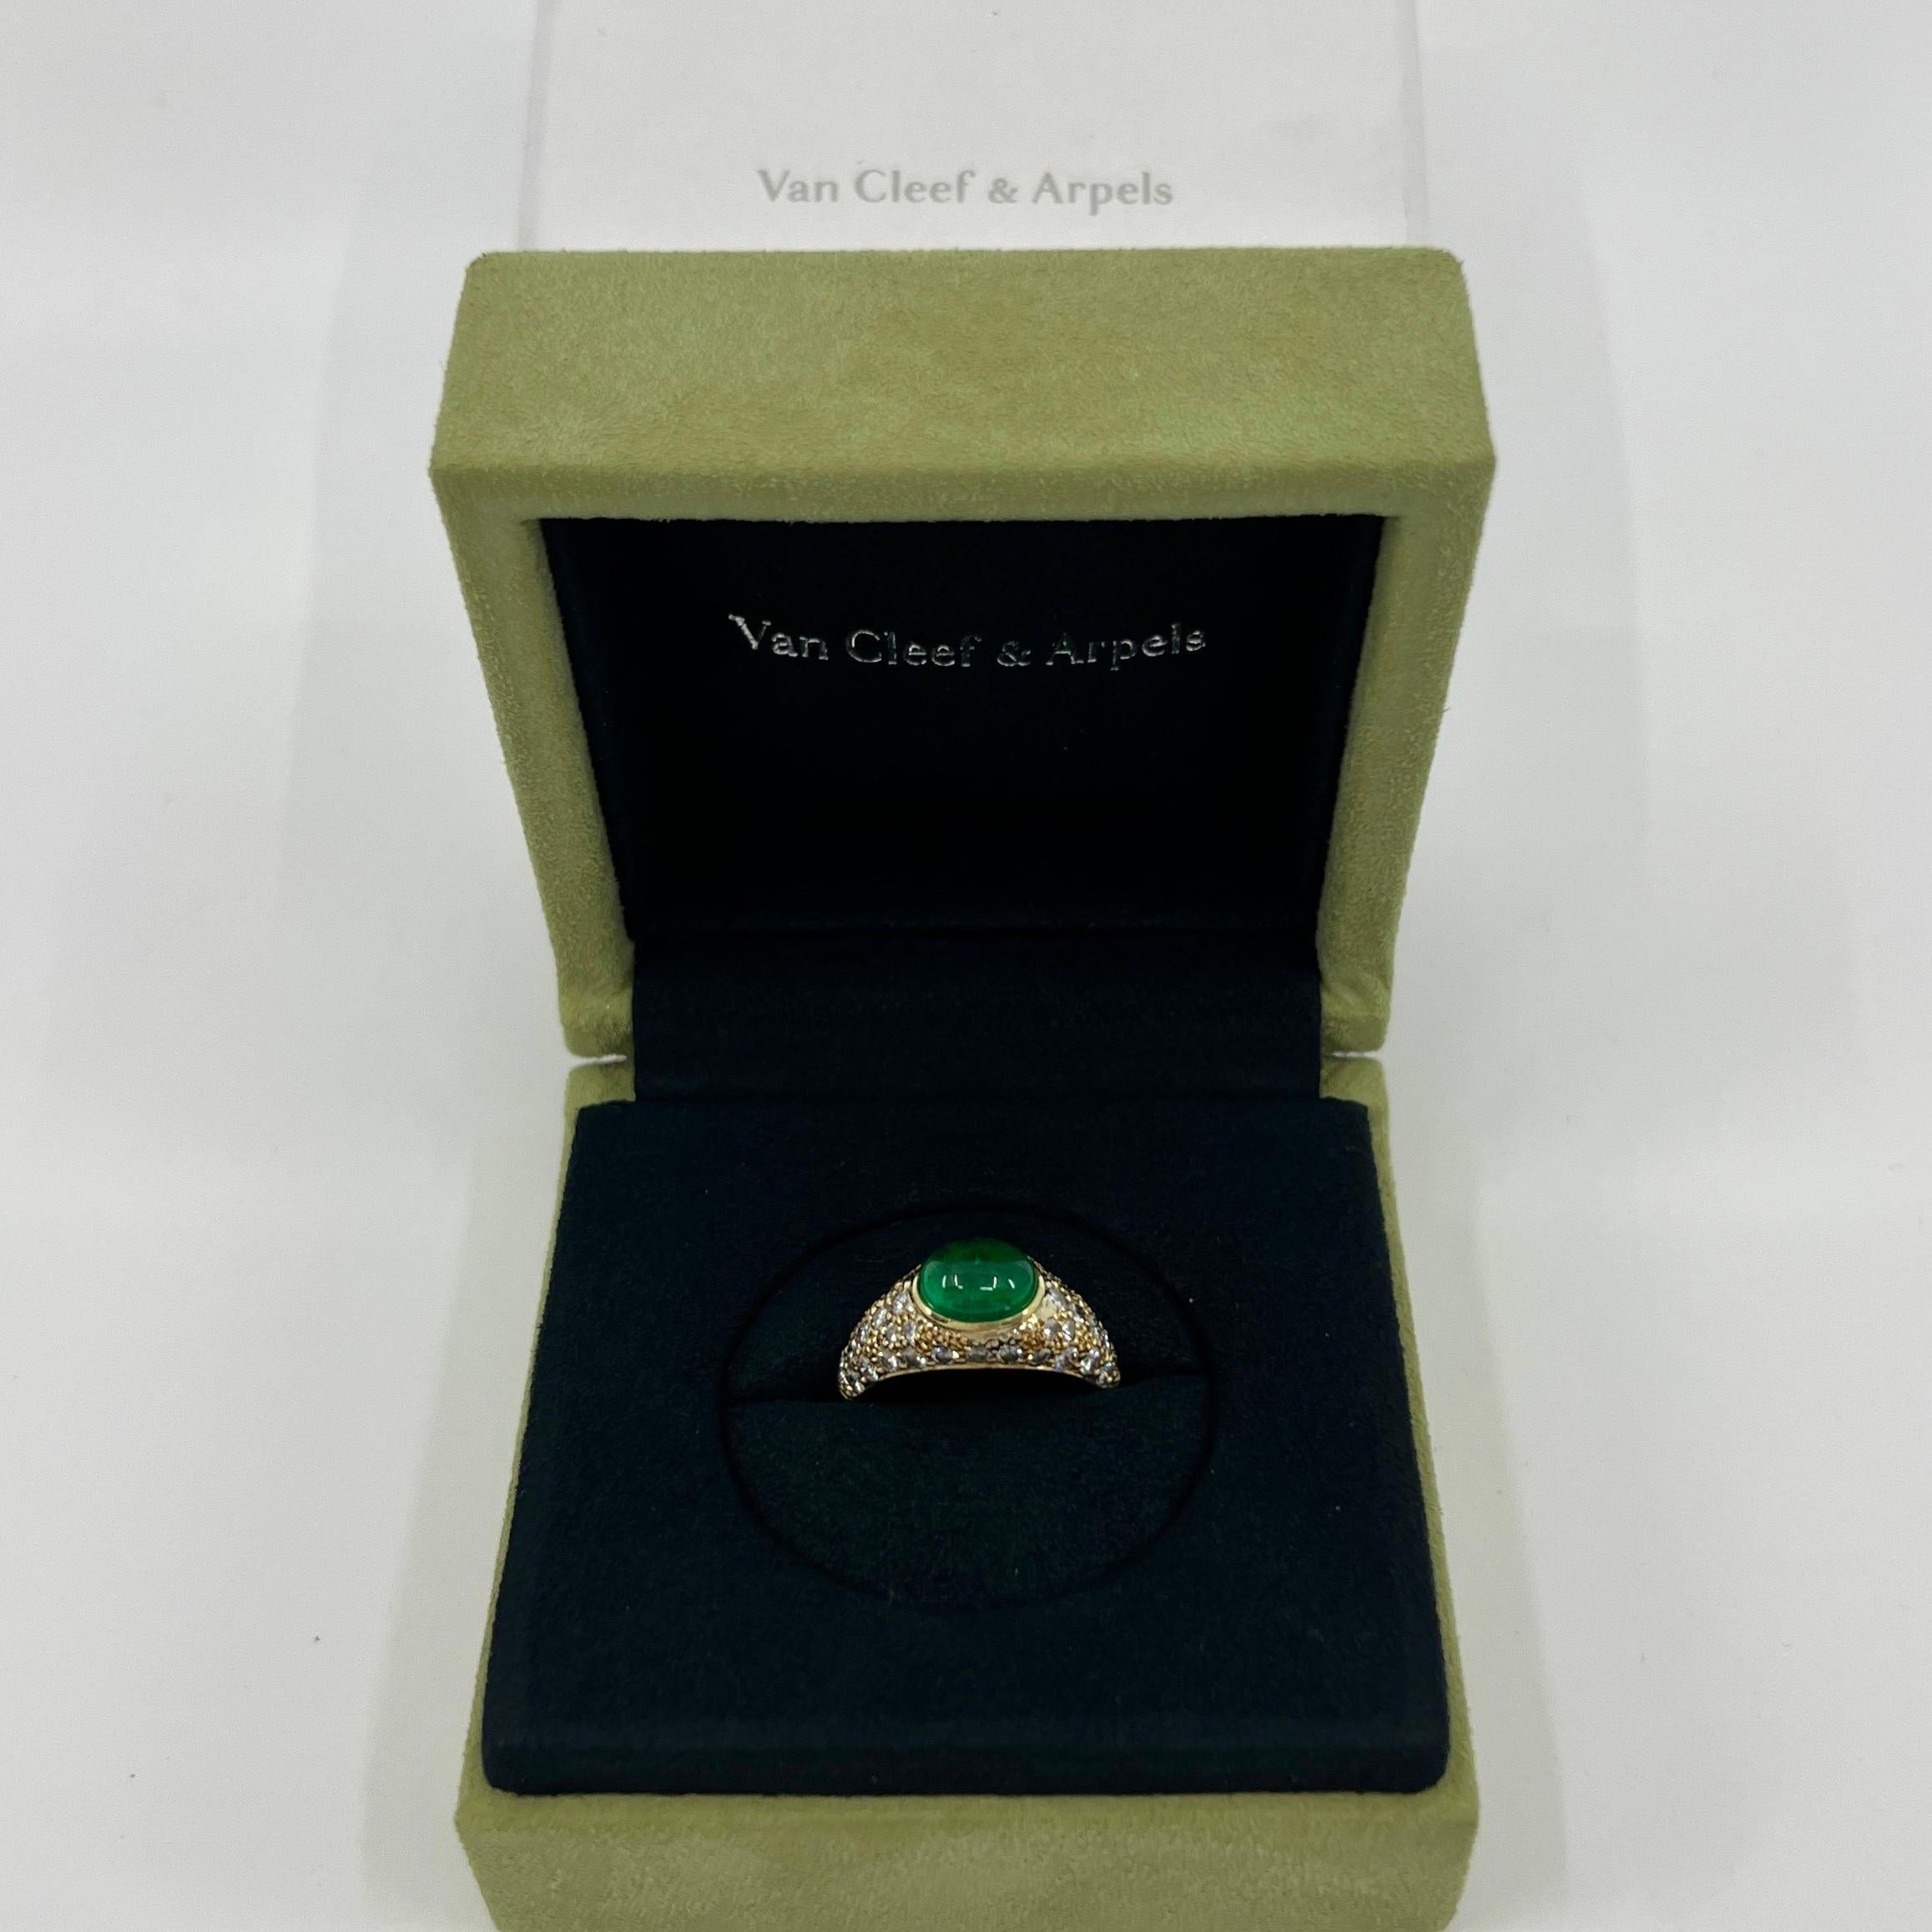 Seltene Vintage Van Cleef & Arpels Oval Cabochon Smaragd und Diamant 18k Gelbgold Cocktail Dome Ring.

Ein atemberaubender und seltener Vintage-Ring von VCA New York mit einem klassischen, für Van Cleef & Arpels typischen Design, besetzt mit einem